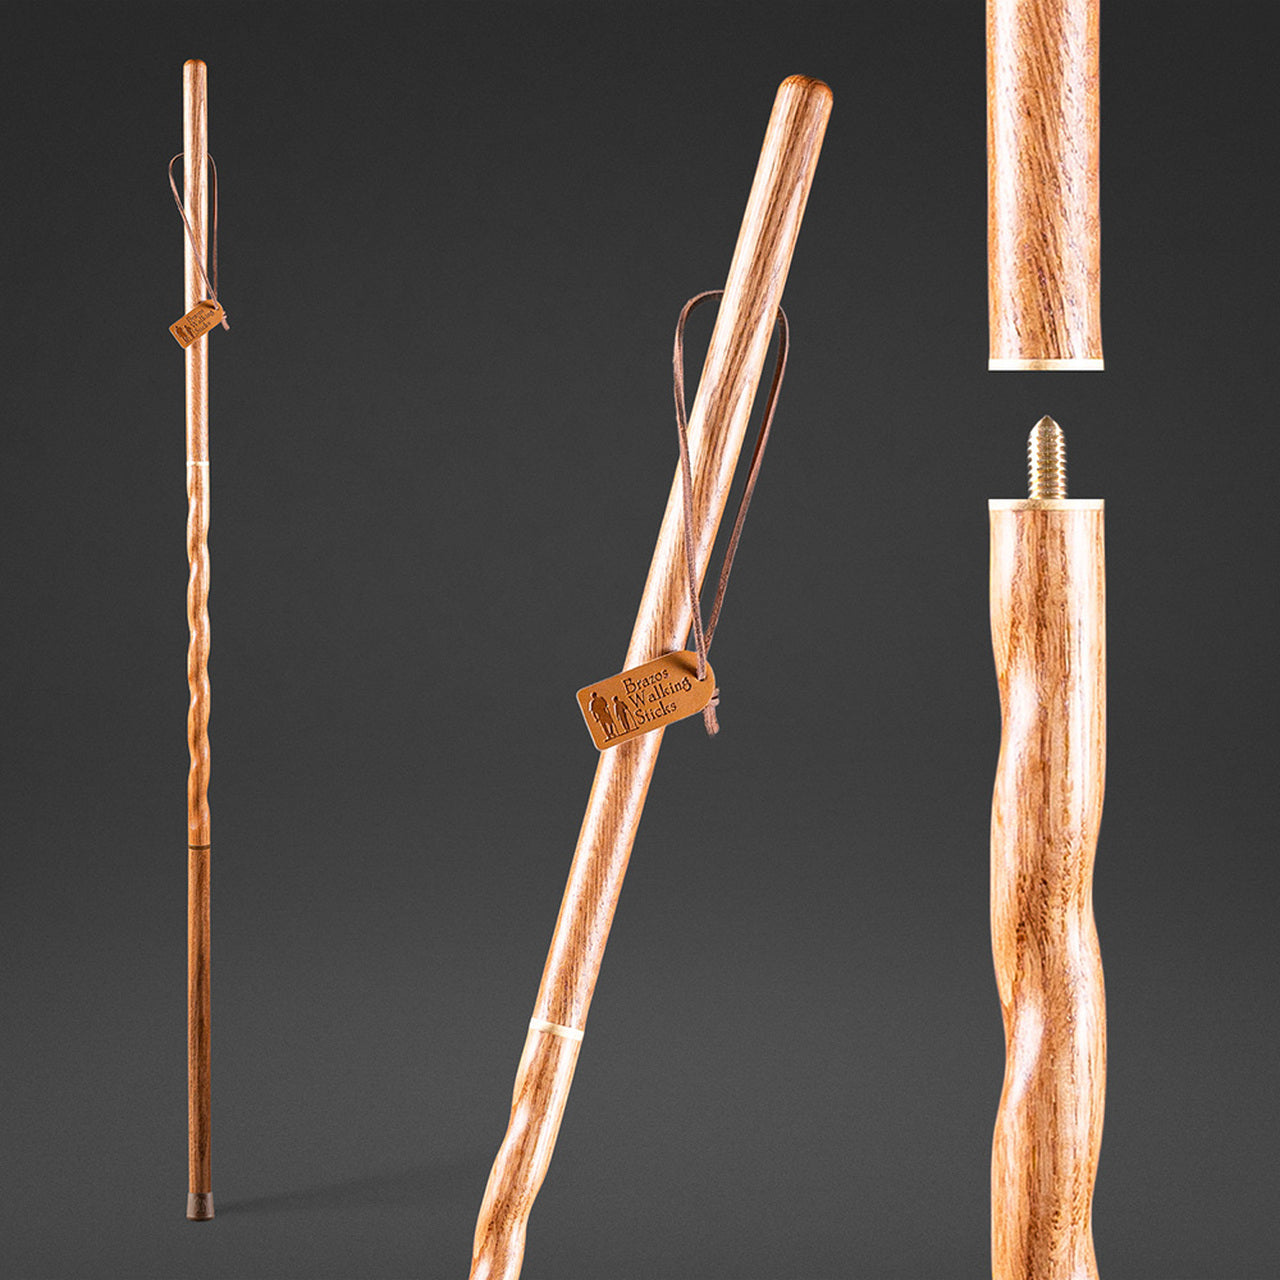 Pin by Азиз on Искусство  Walking sticks, Wenge wood, Walking canes